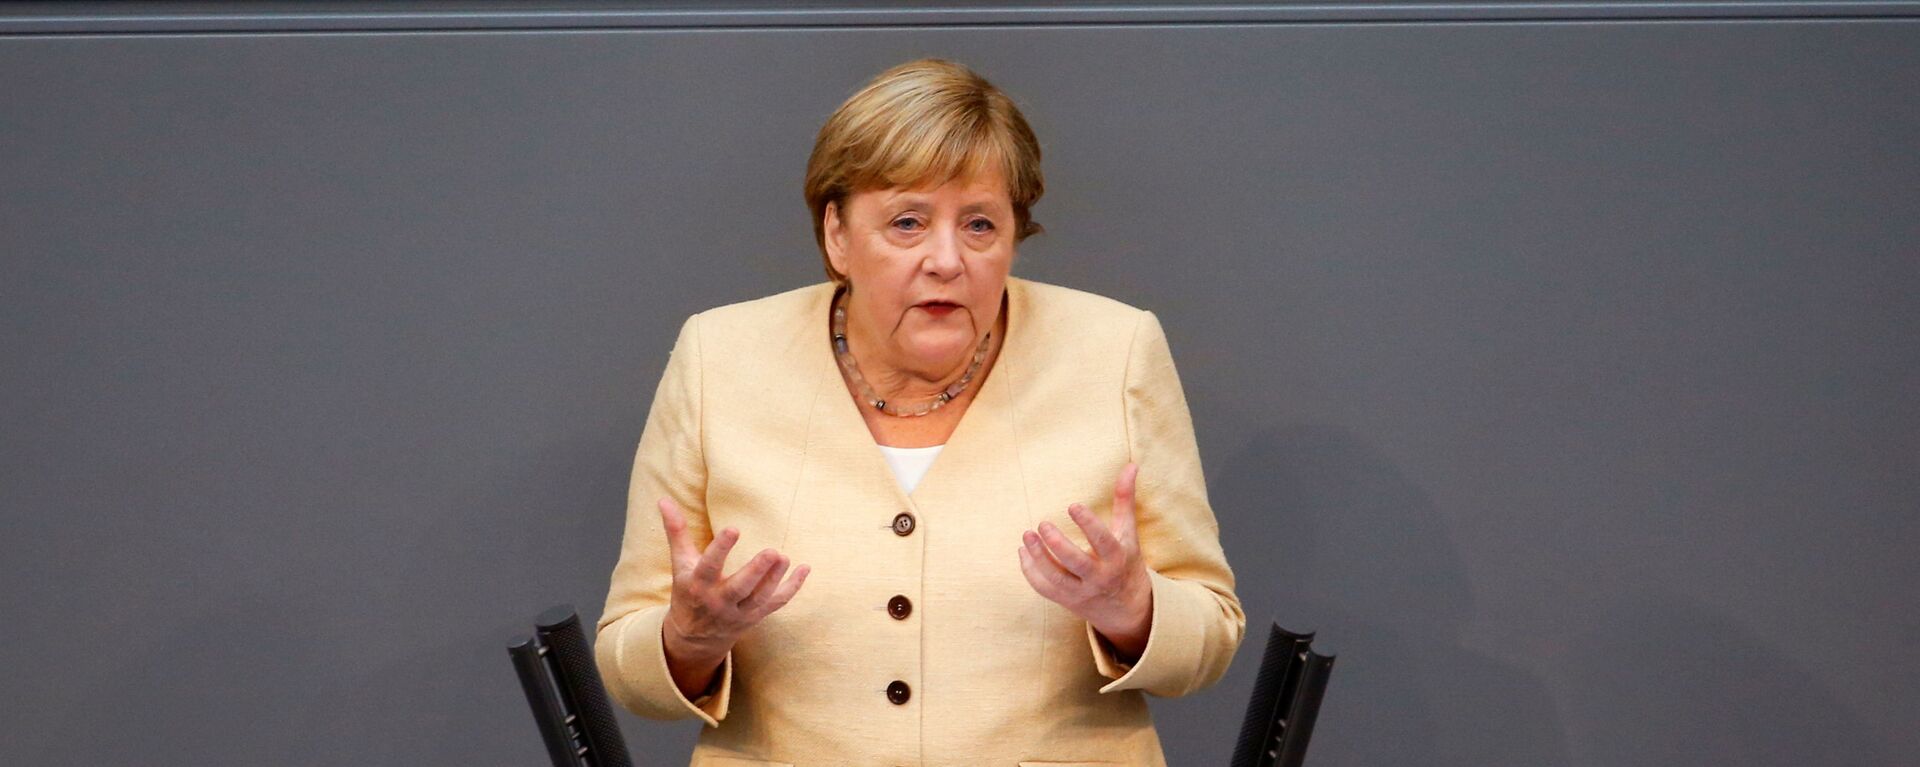 Канцлер Германии Ангела Меркель выступает в Бундестаге, Германия - Sputnik 日本, 1920, 18.11.2021